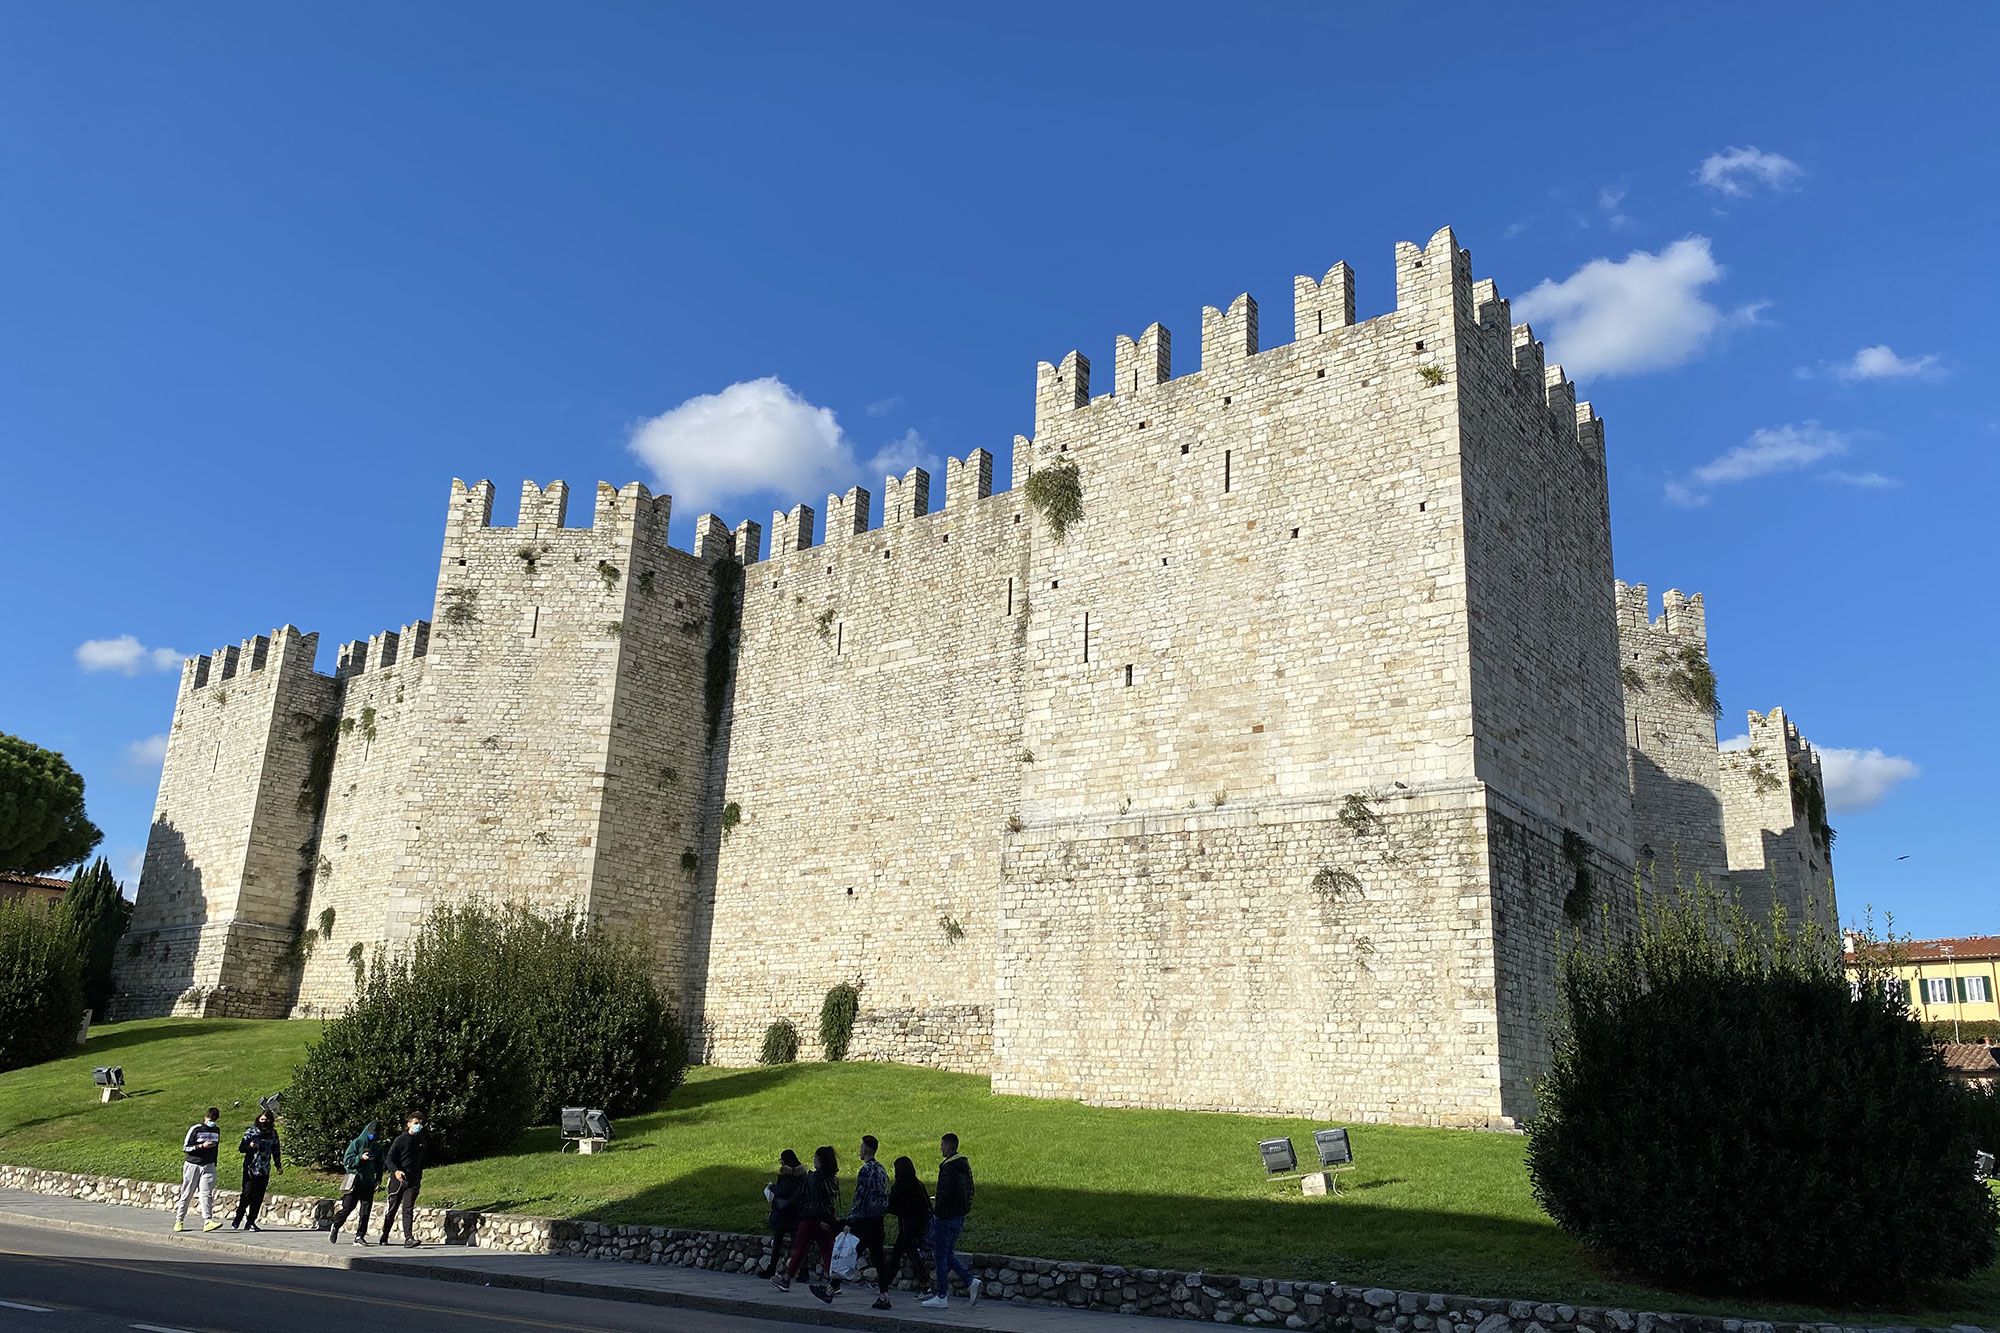 Castello dell'Imperatore - Prato